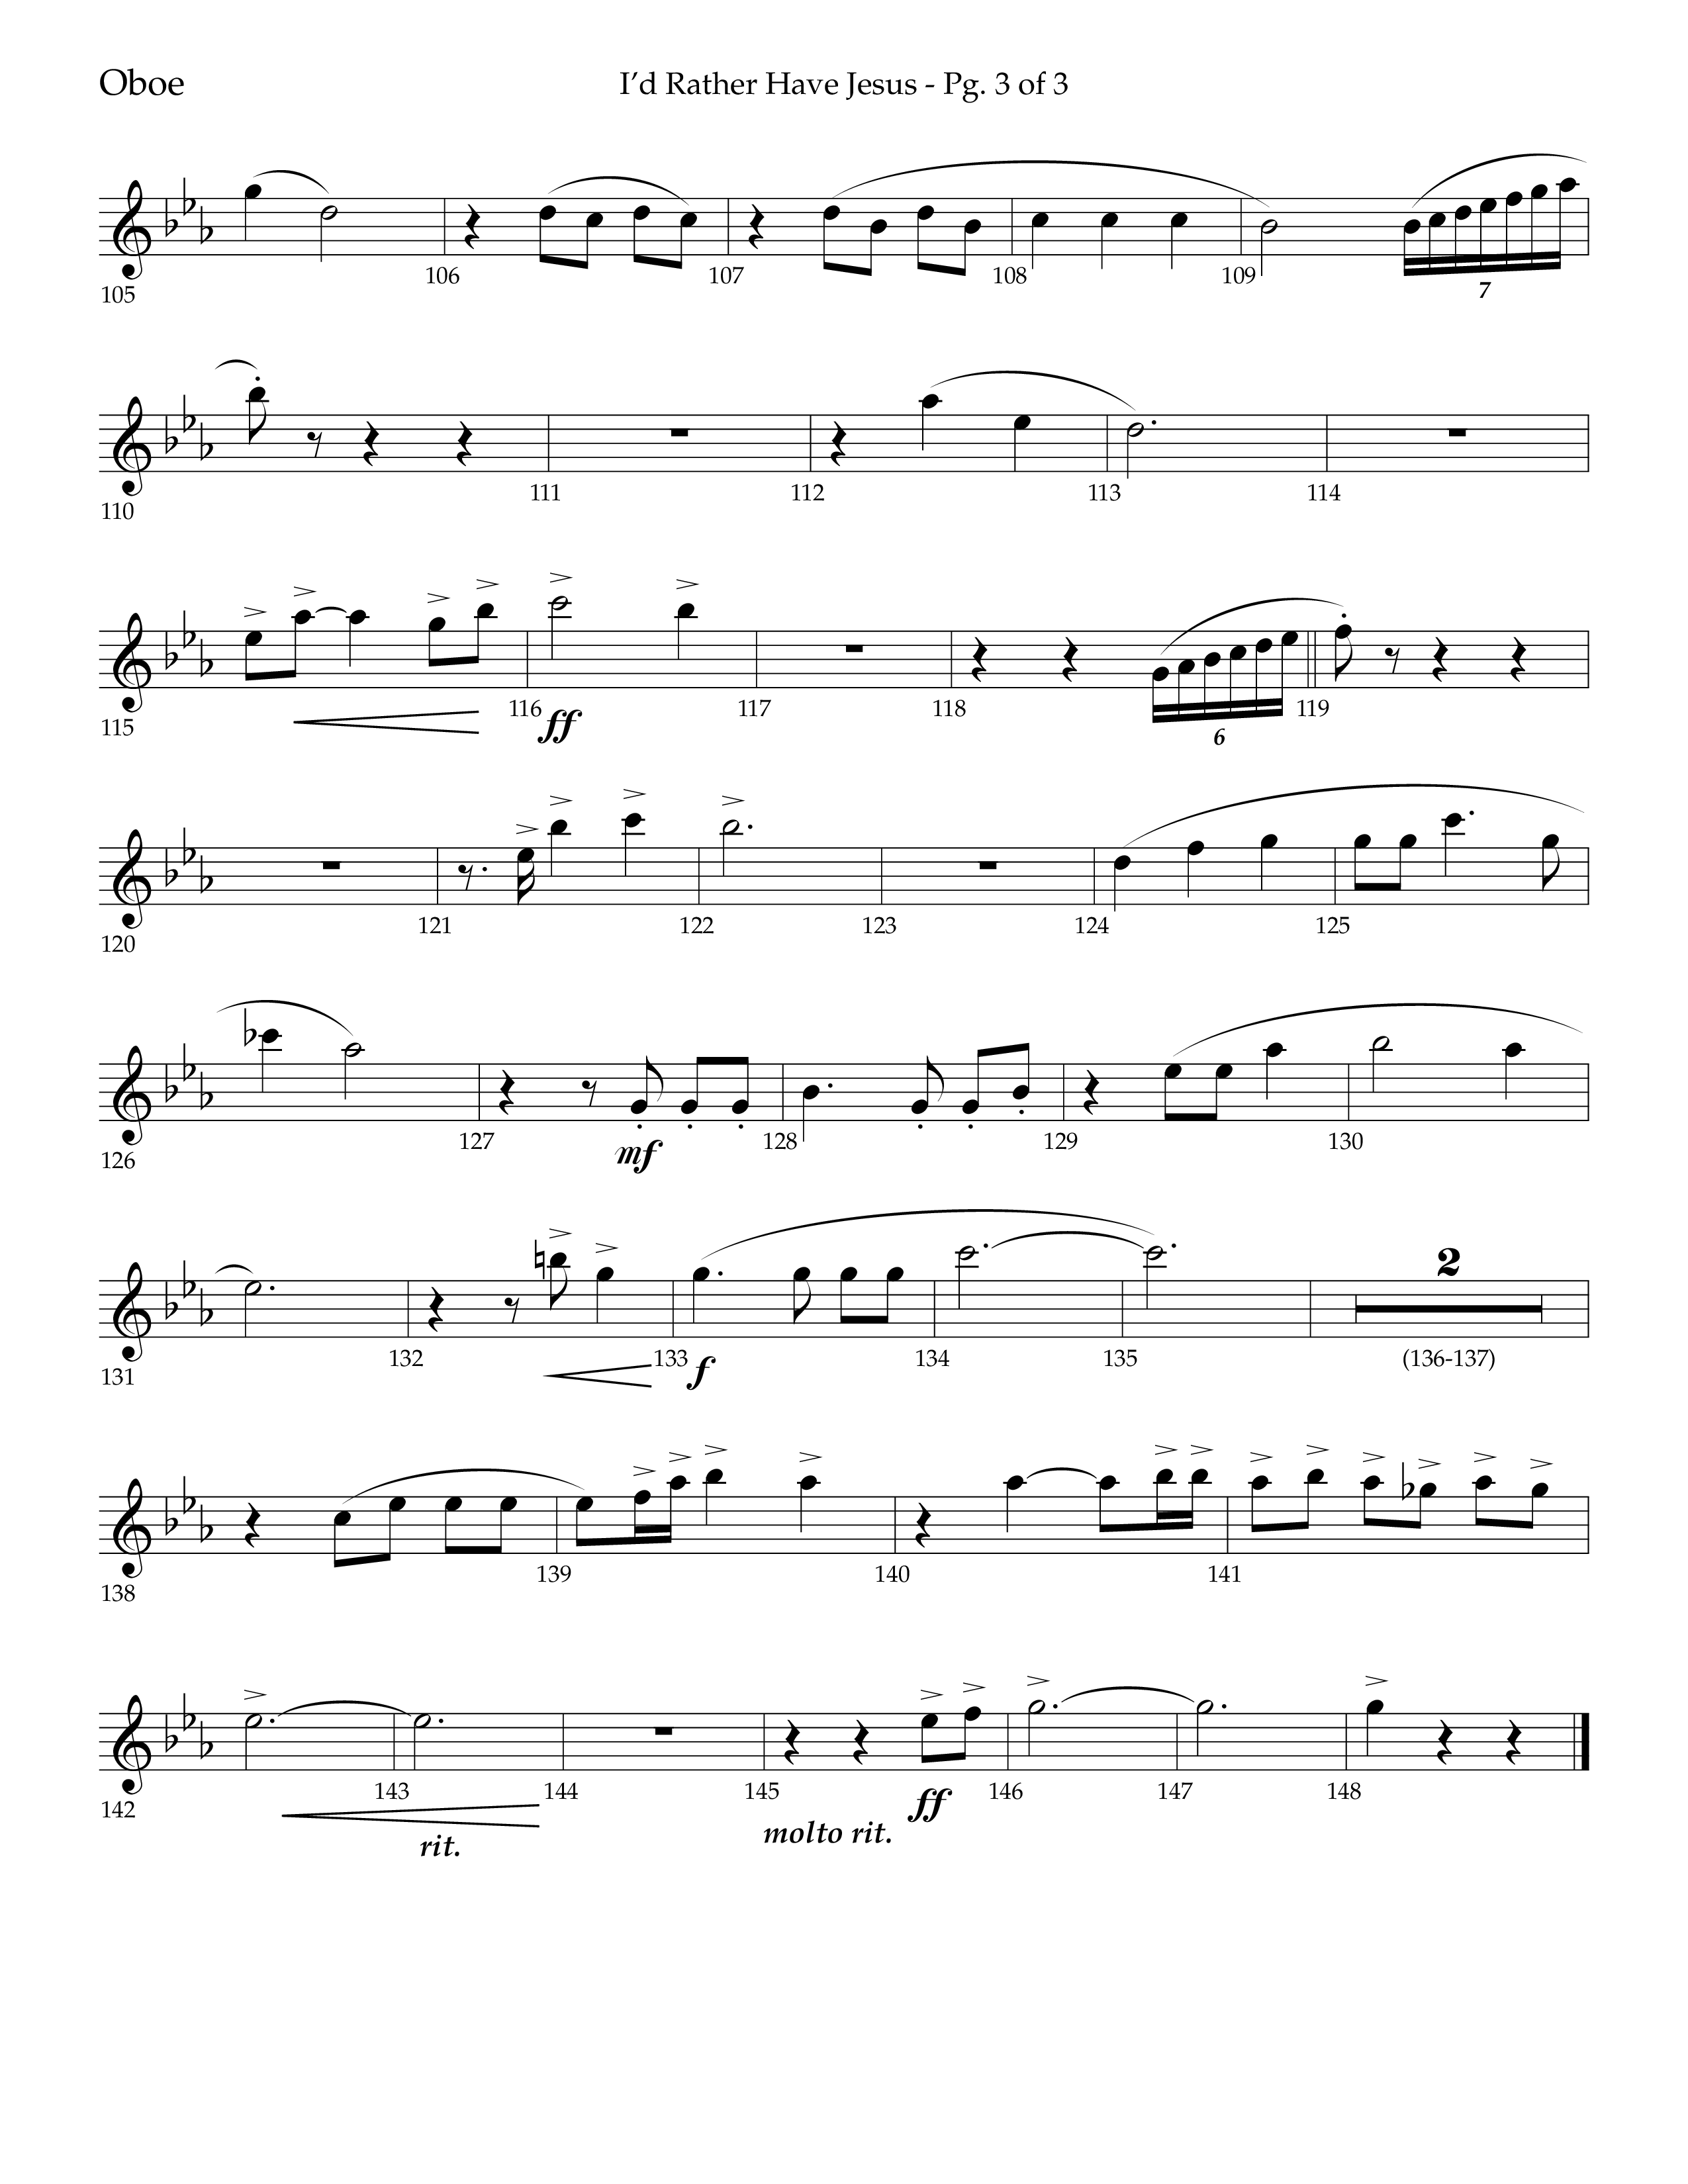 I'd Rather Have Jesus (Choral Anthem SATB) Oboe (Lifeway Choral / Arr. Richard Kingsmore)